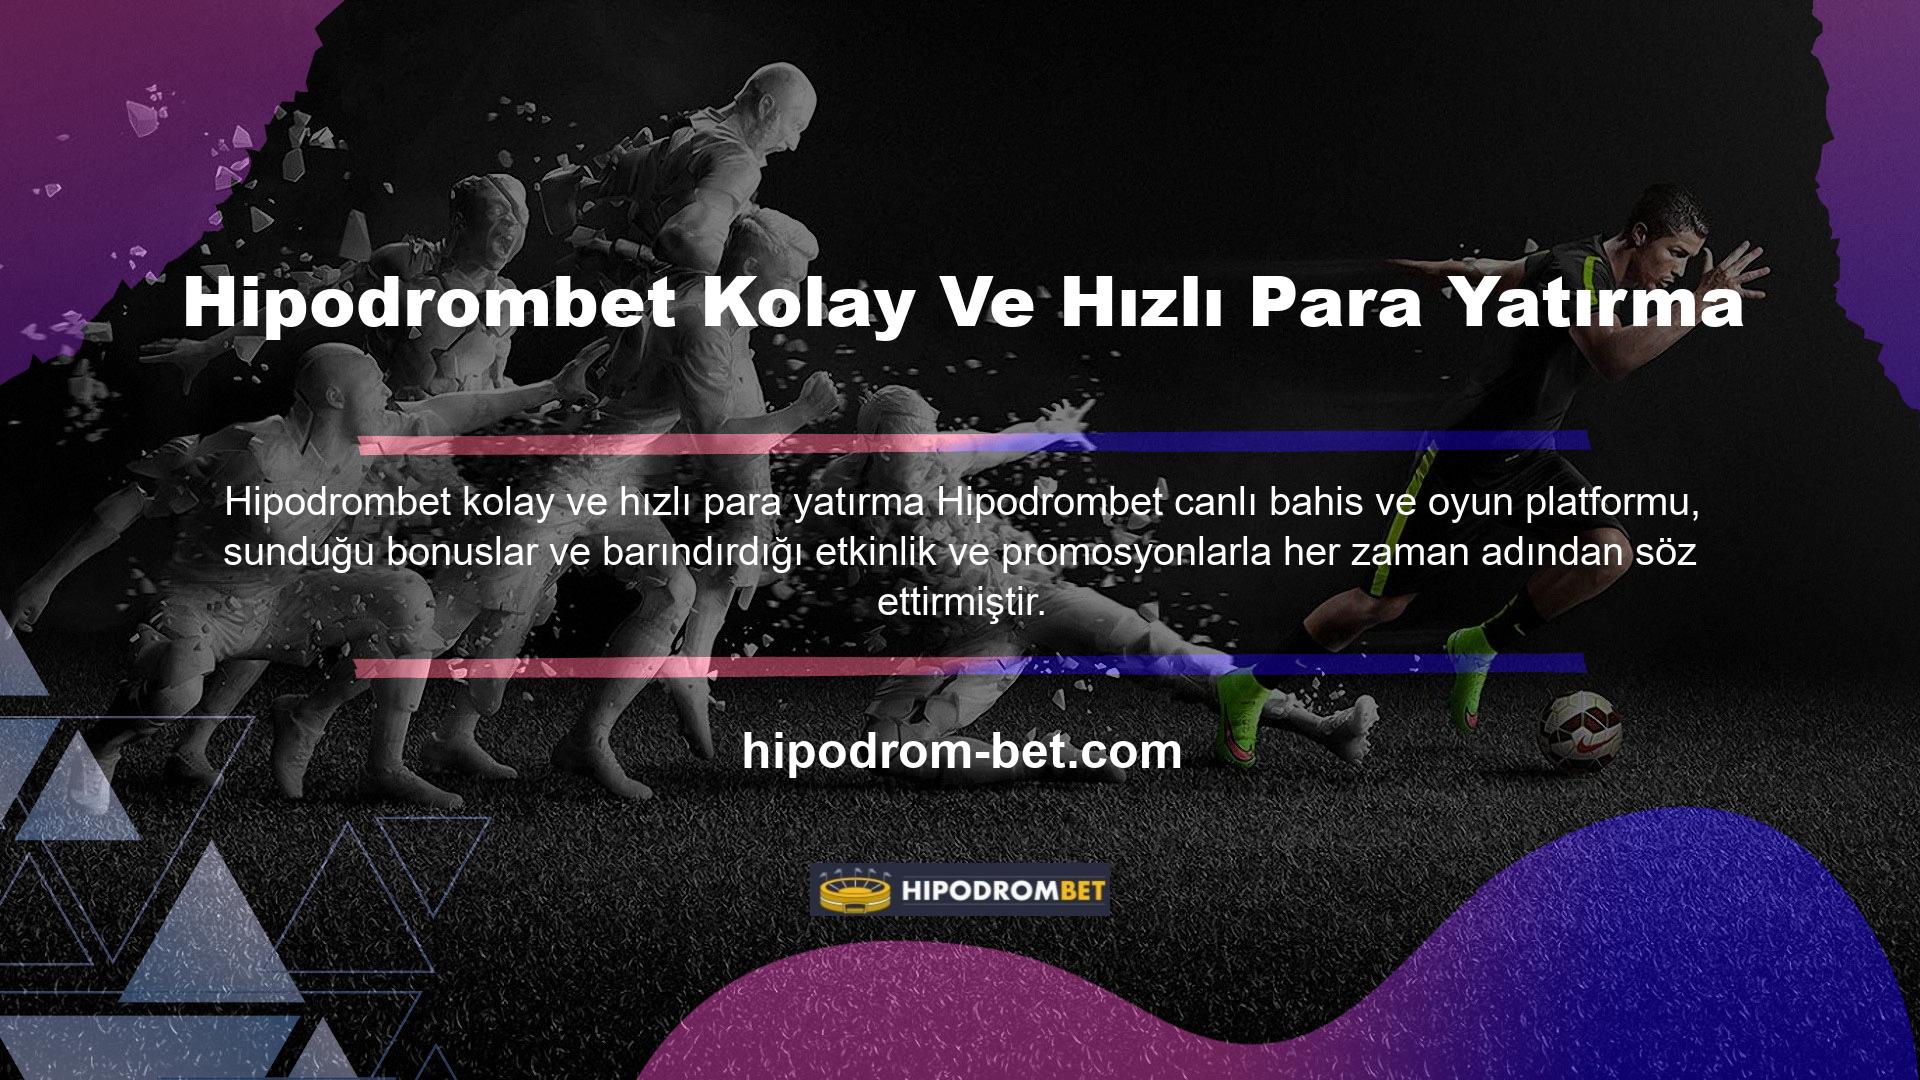 Türkiye'nin en güvenilir canlı bahis sitesi Hipodrombet online platformu ödeme teknolojilerinden biri, hızlı kripto yatırımı, çok kolay ve hızlı para yatırma teknolojisi